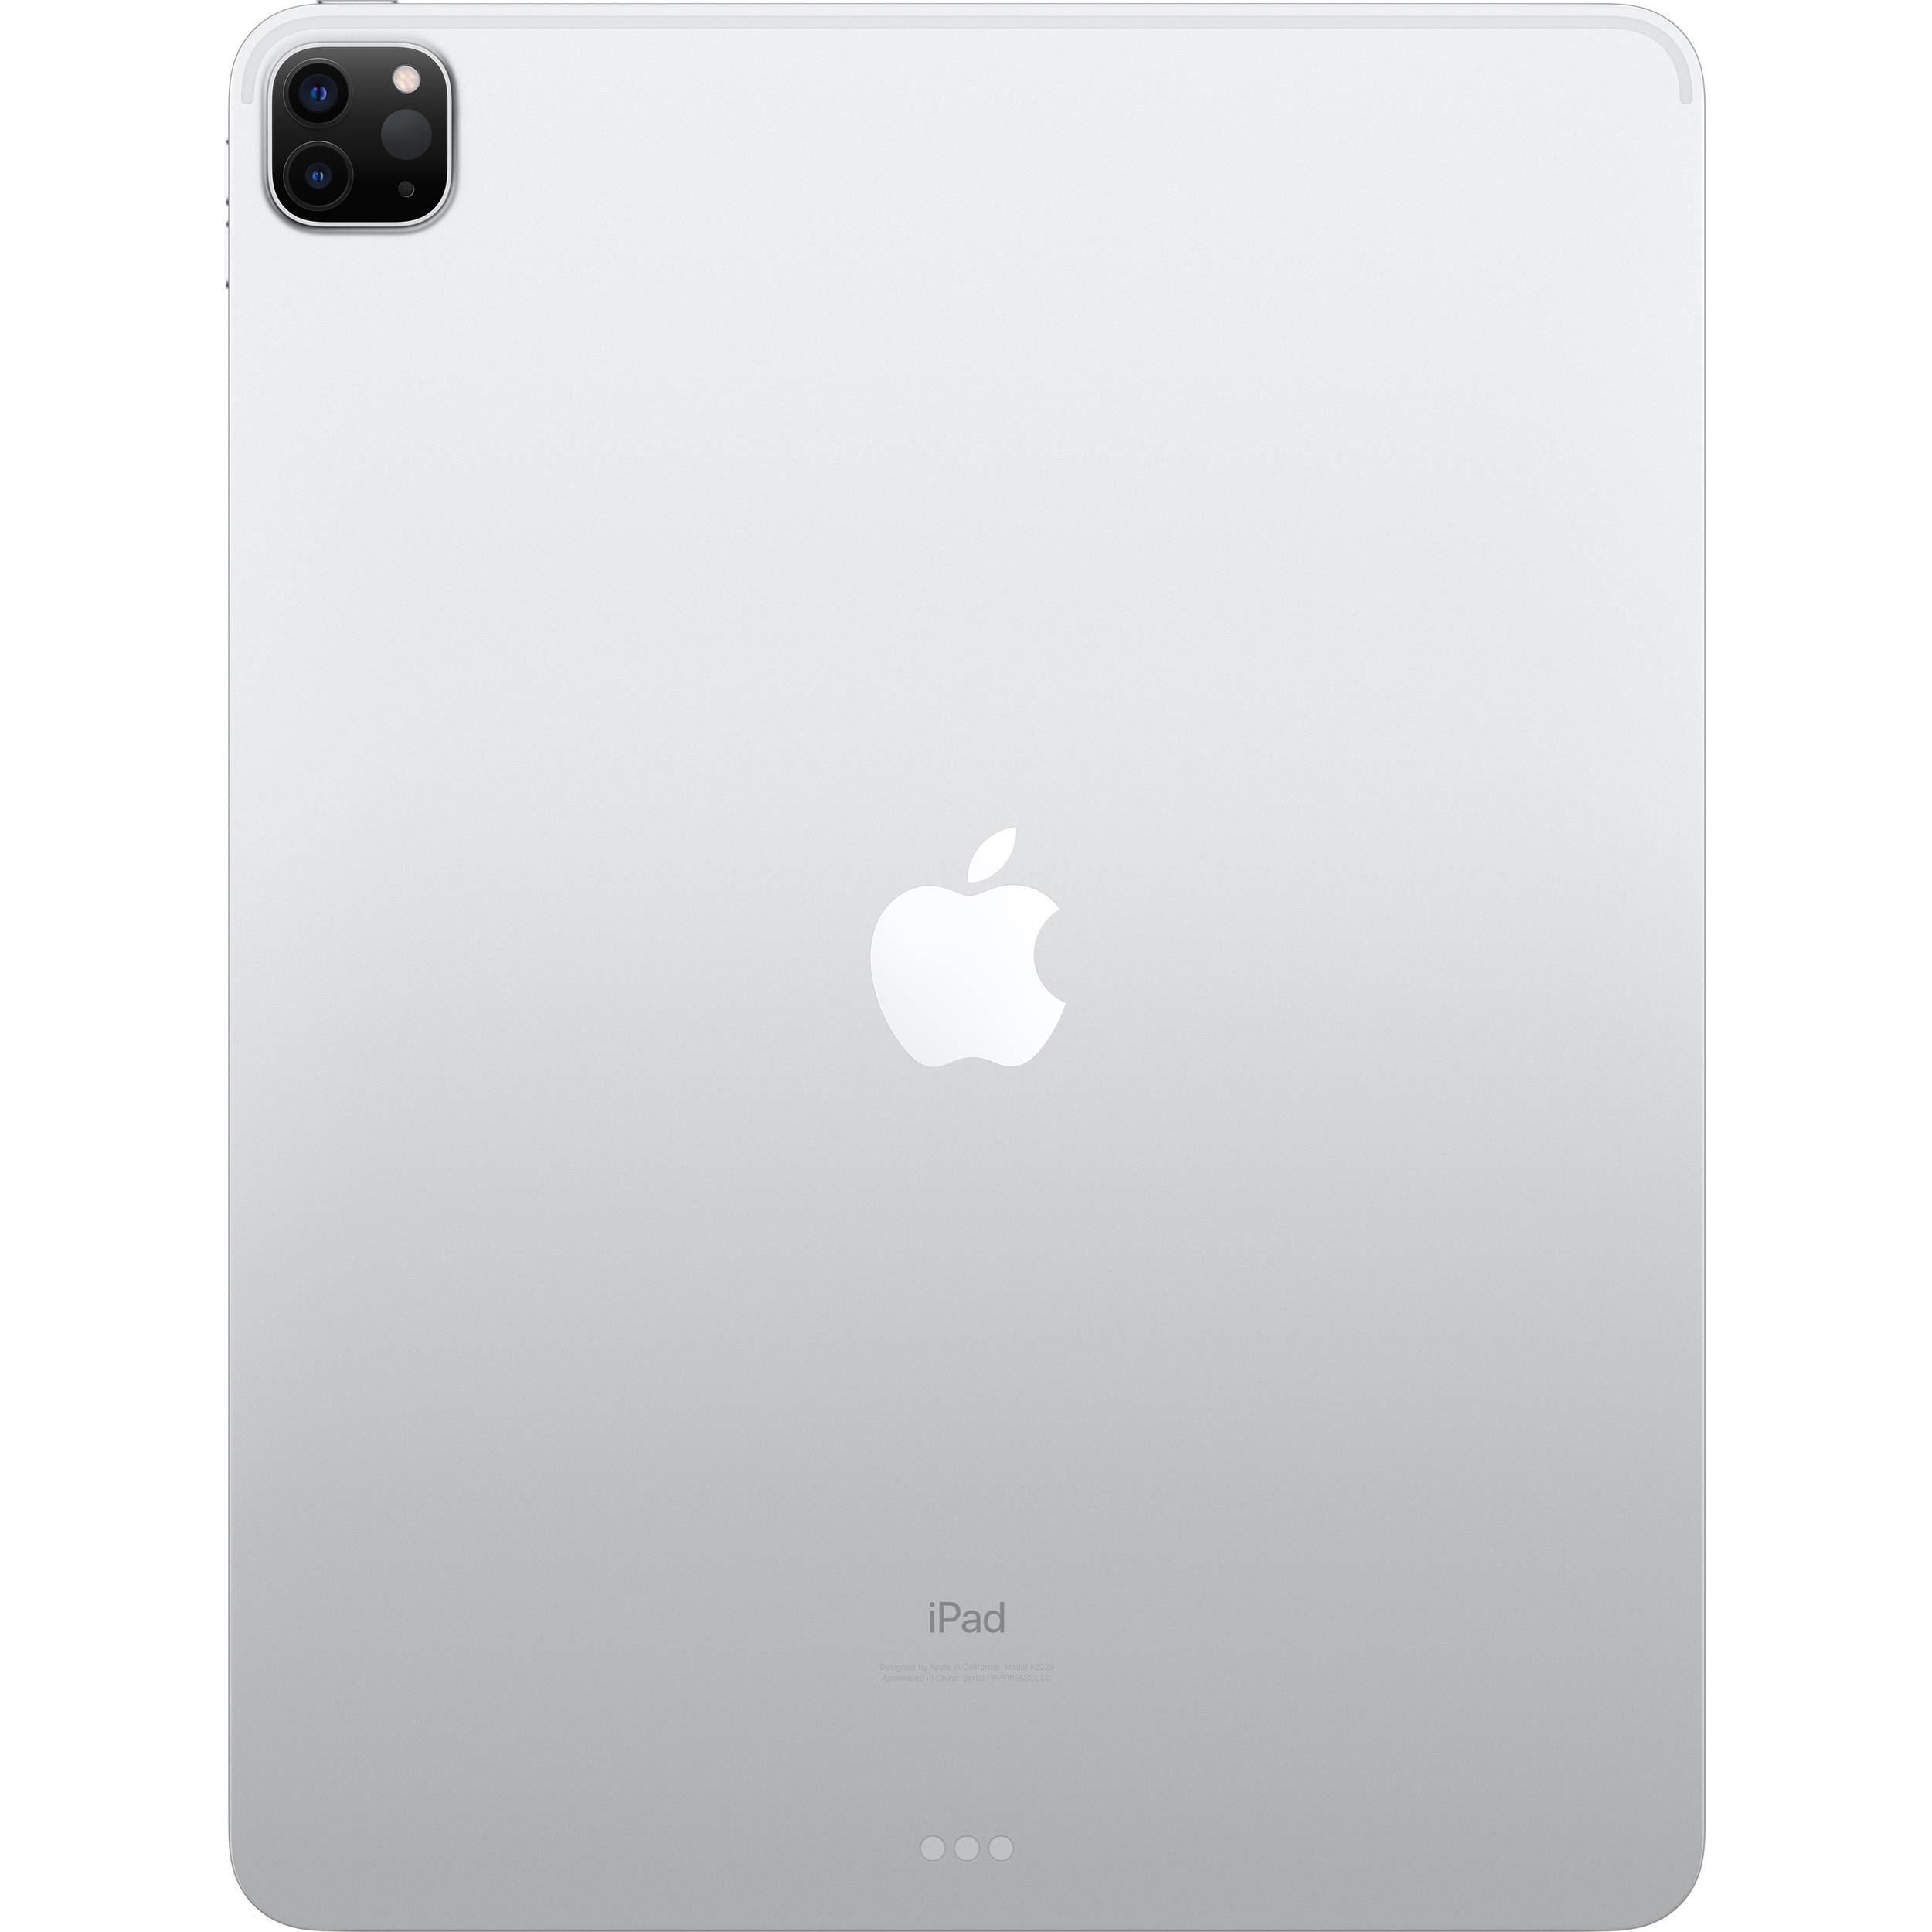 تبلت اپل مدل iPad Pro 12.9 inch 2020 4G ظرفیت 512 گیگابایت